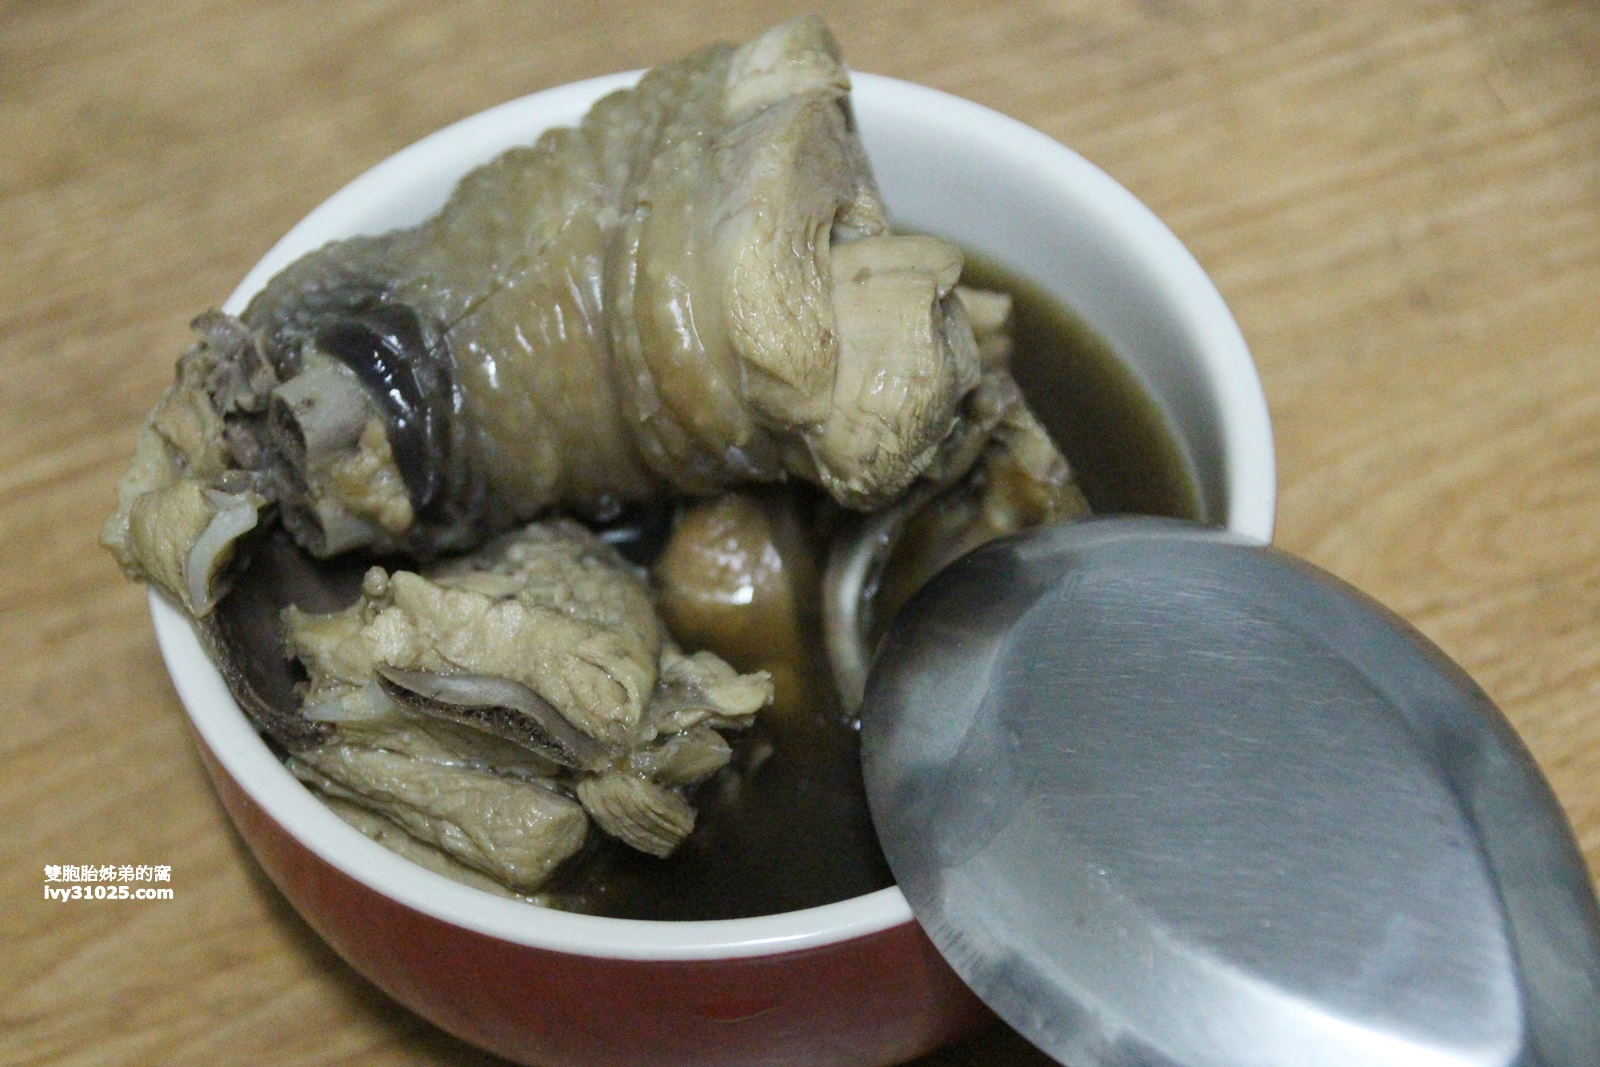 雙月食品社 | 華人養身漢方雞湯第一品牌 | 金玉婀嬌 | 殿試天麻 | 土雞腿湯